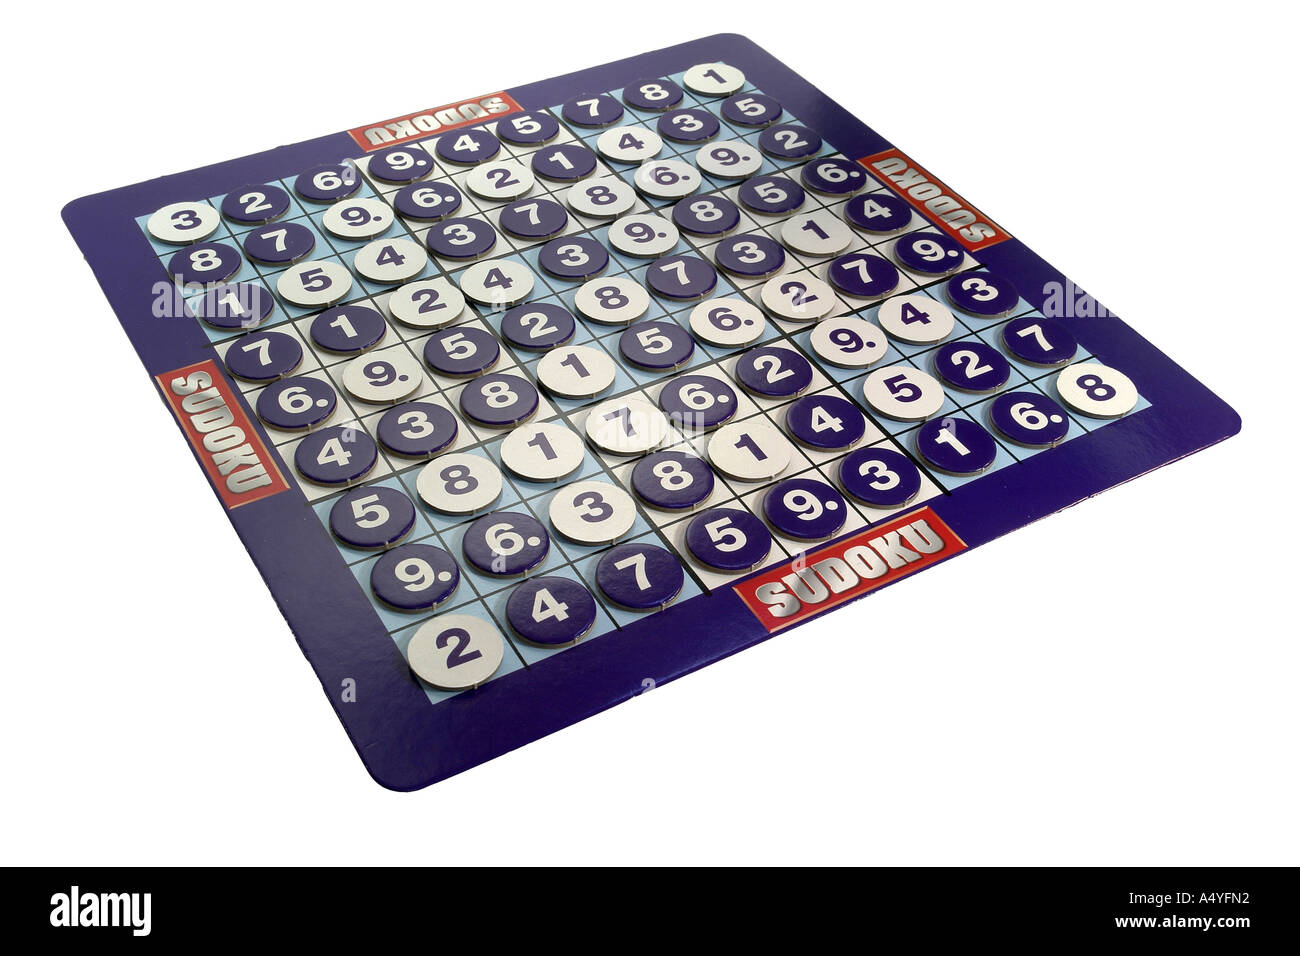 Il Sudoku un numero puzzle basato sul matematico svizzero Leonhard Euler Foto Stock